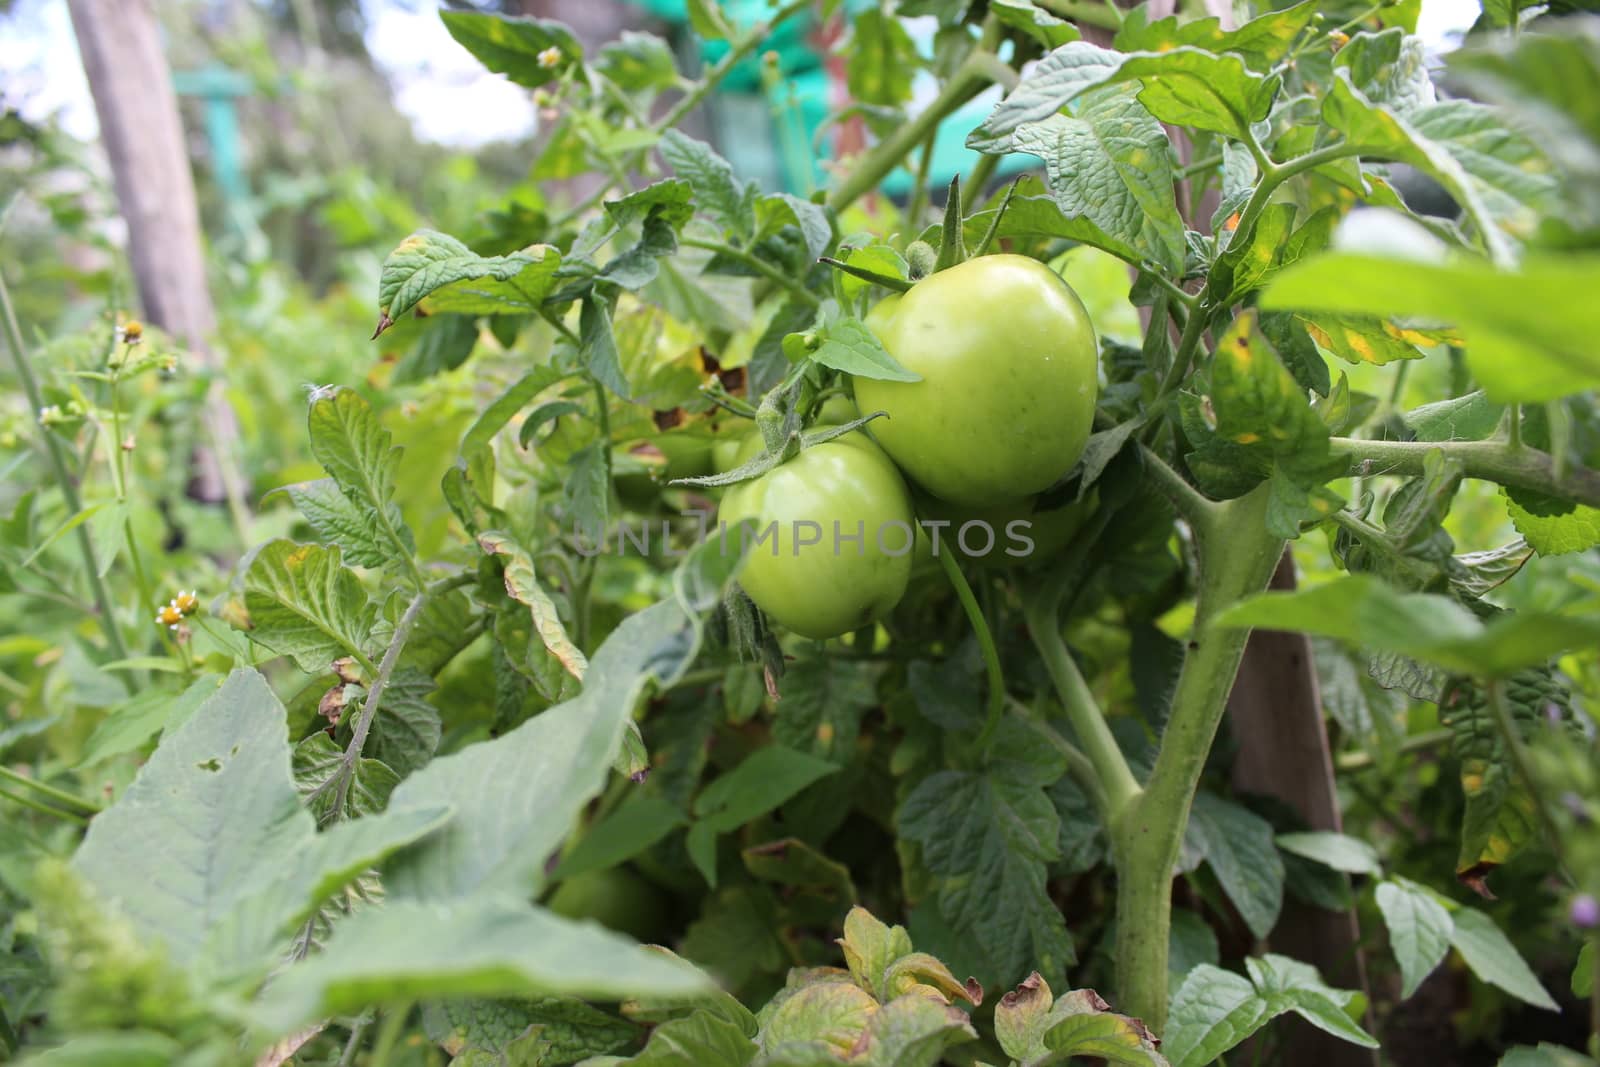 Unripe Tomato Plants by nurjan100